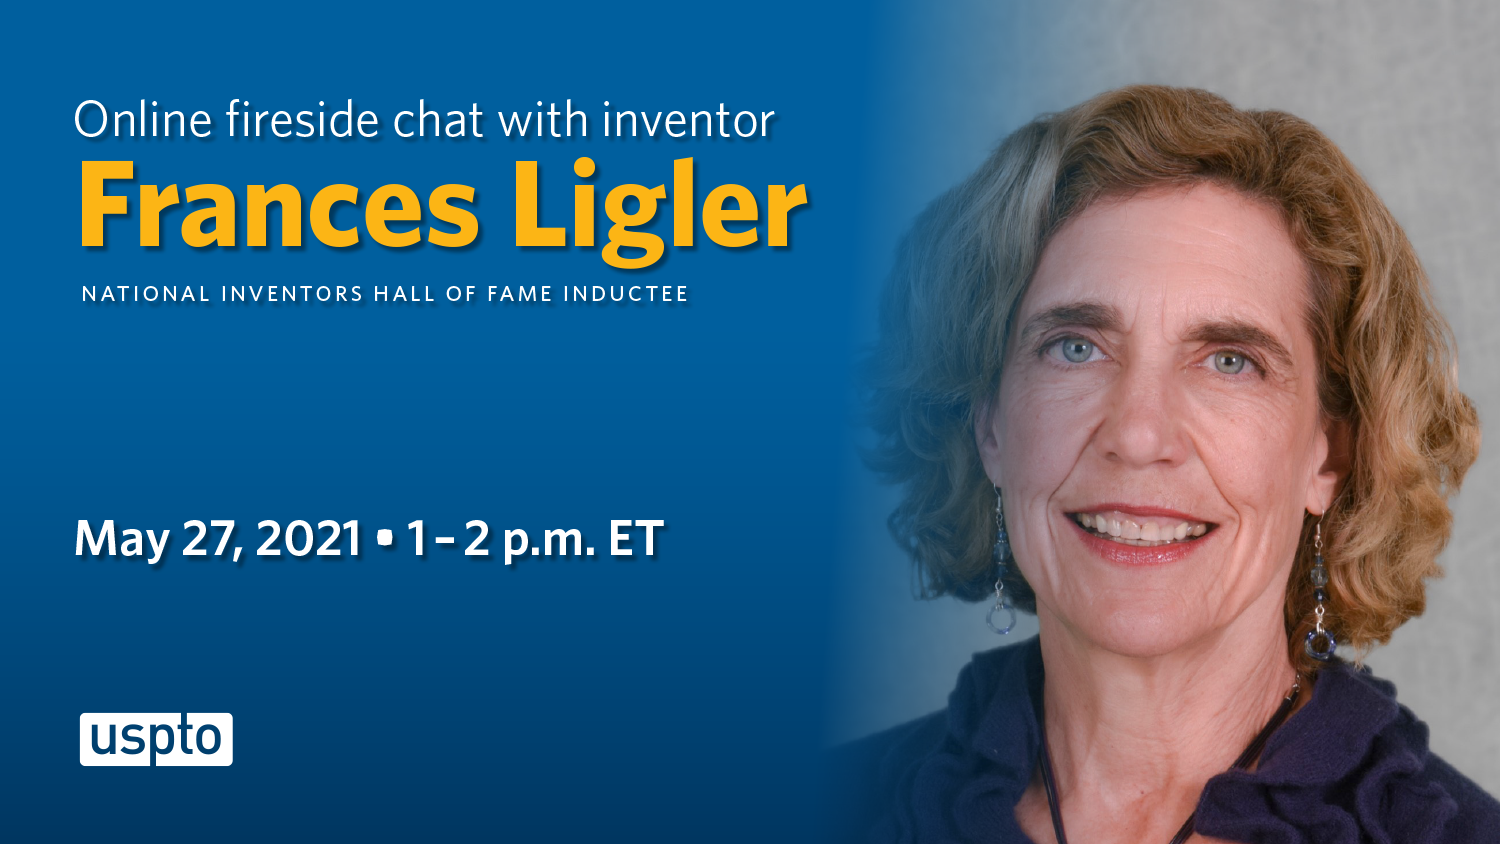 Online fireside chat with inventor Frances Ligler - May 27, 2021, 1-2 pm ET